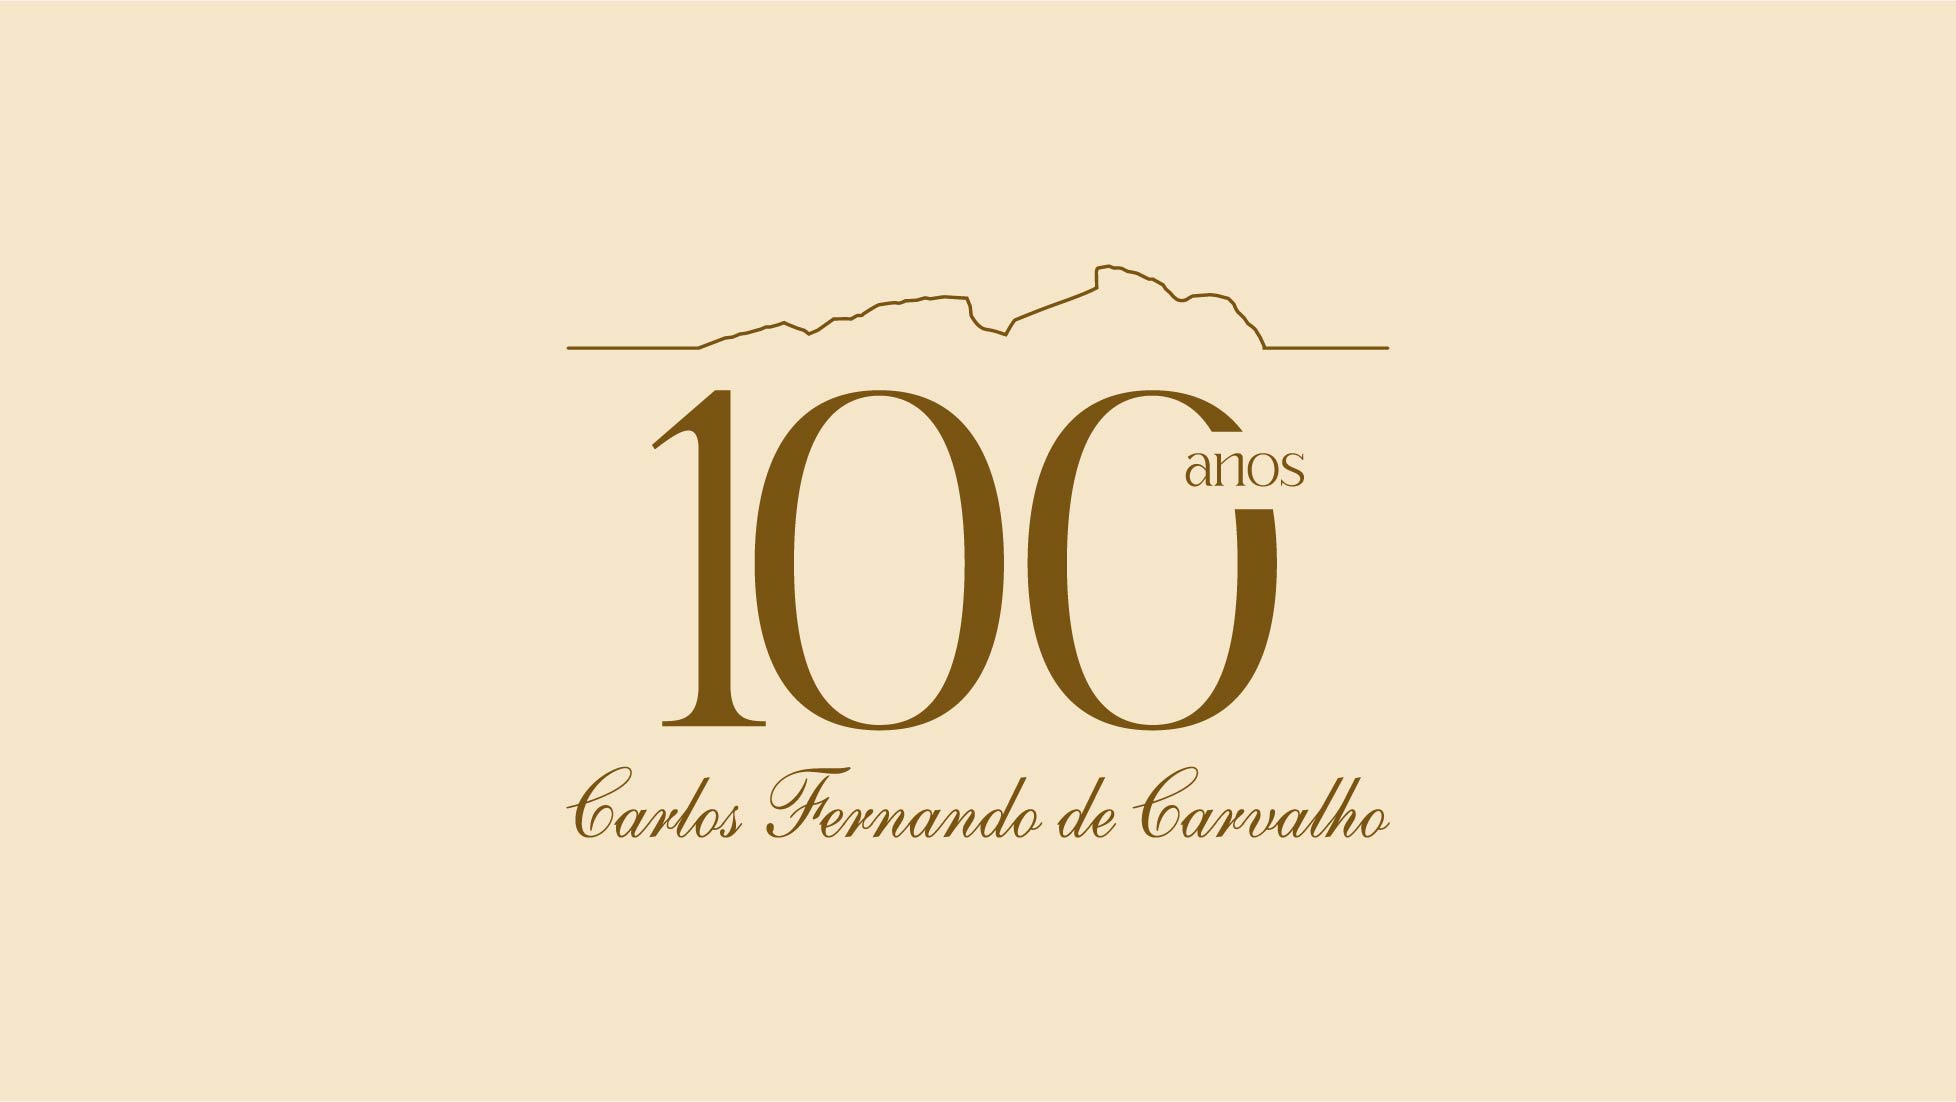 Carlos Fernando de Carvalho, Presidente do Conselho da Carvalho Hosken, completa 100 anos